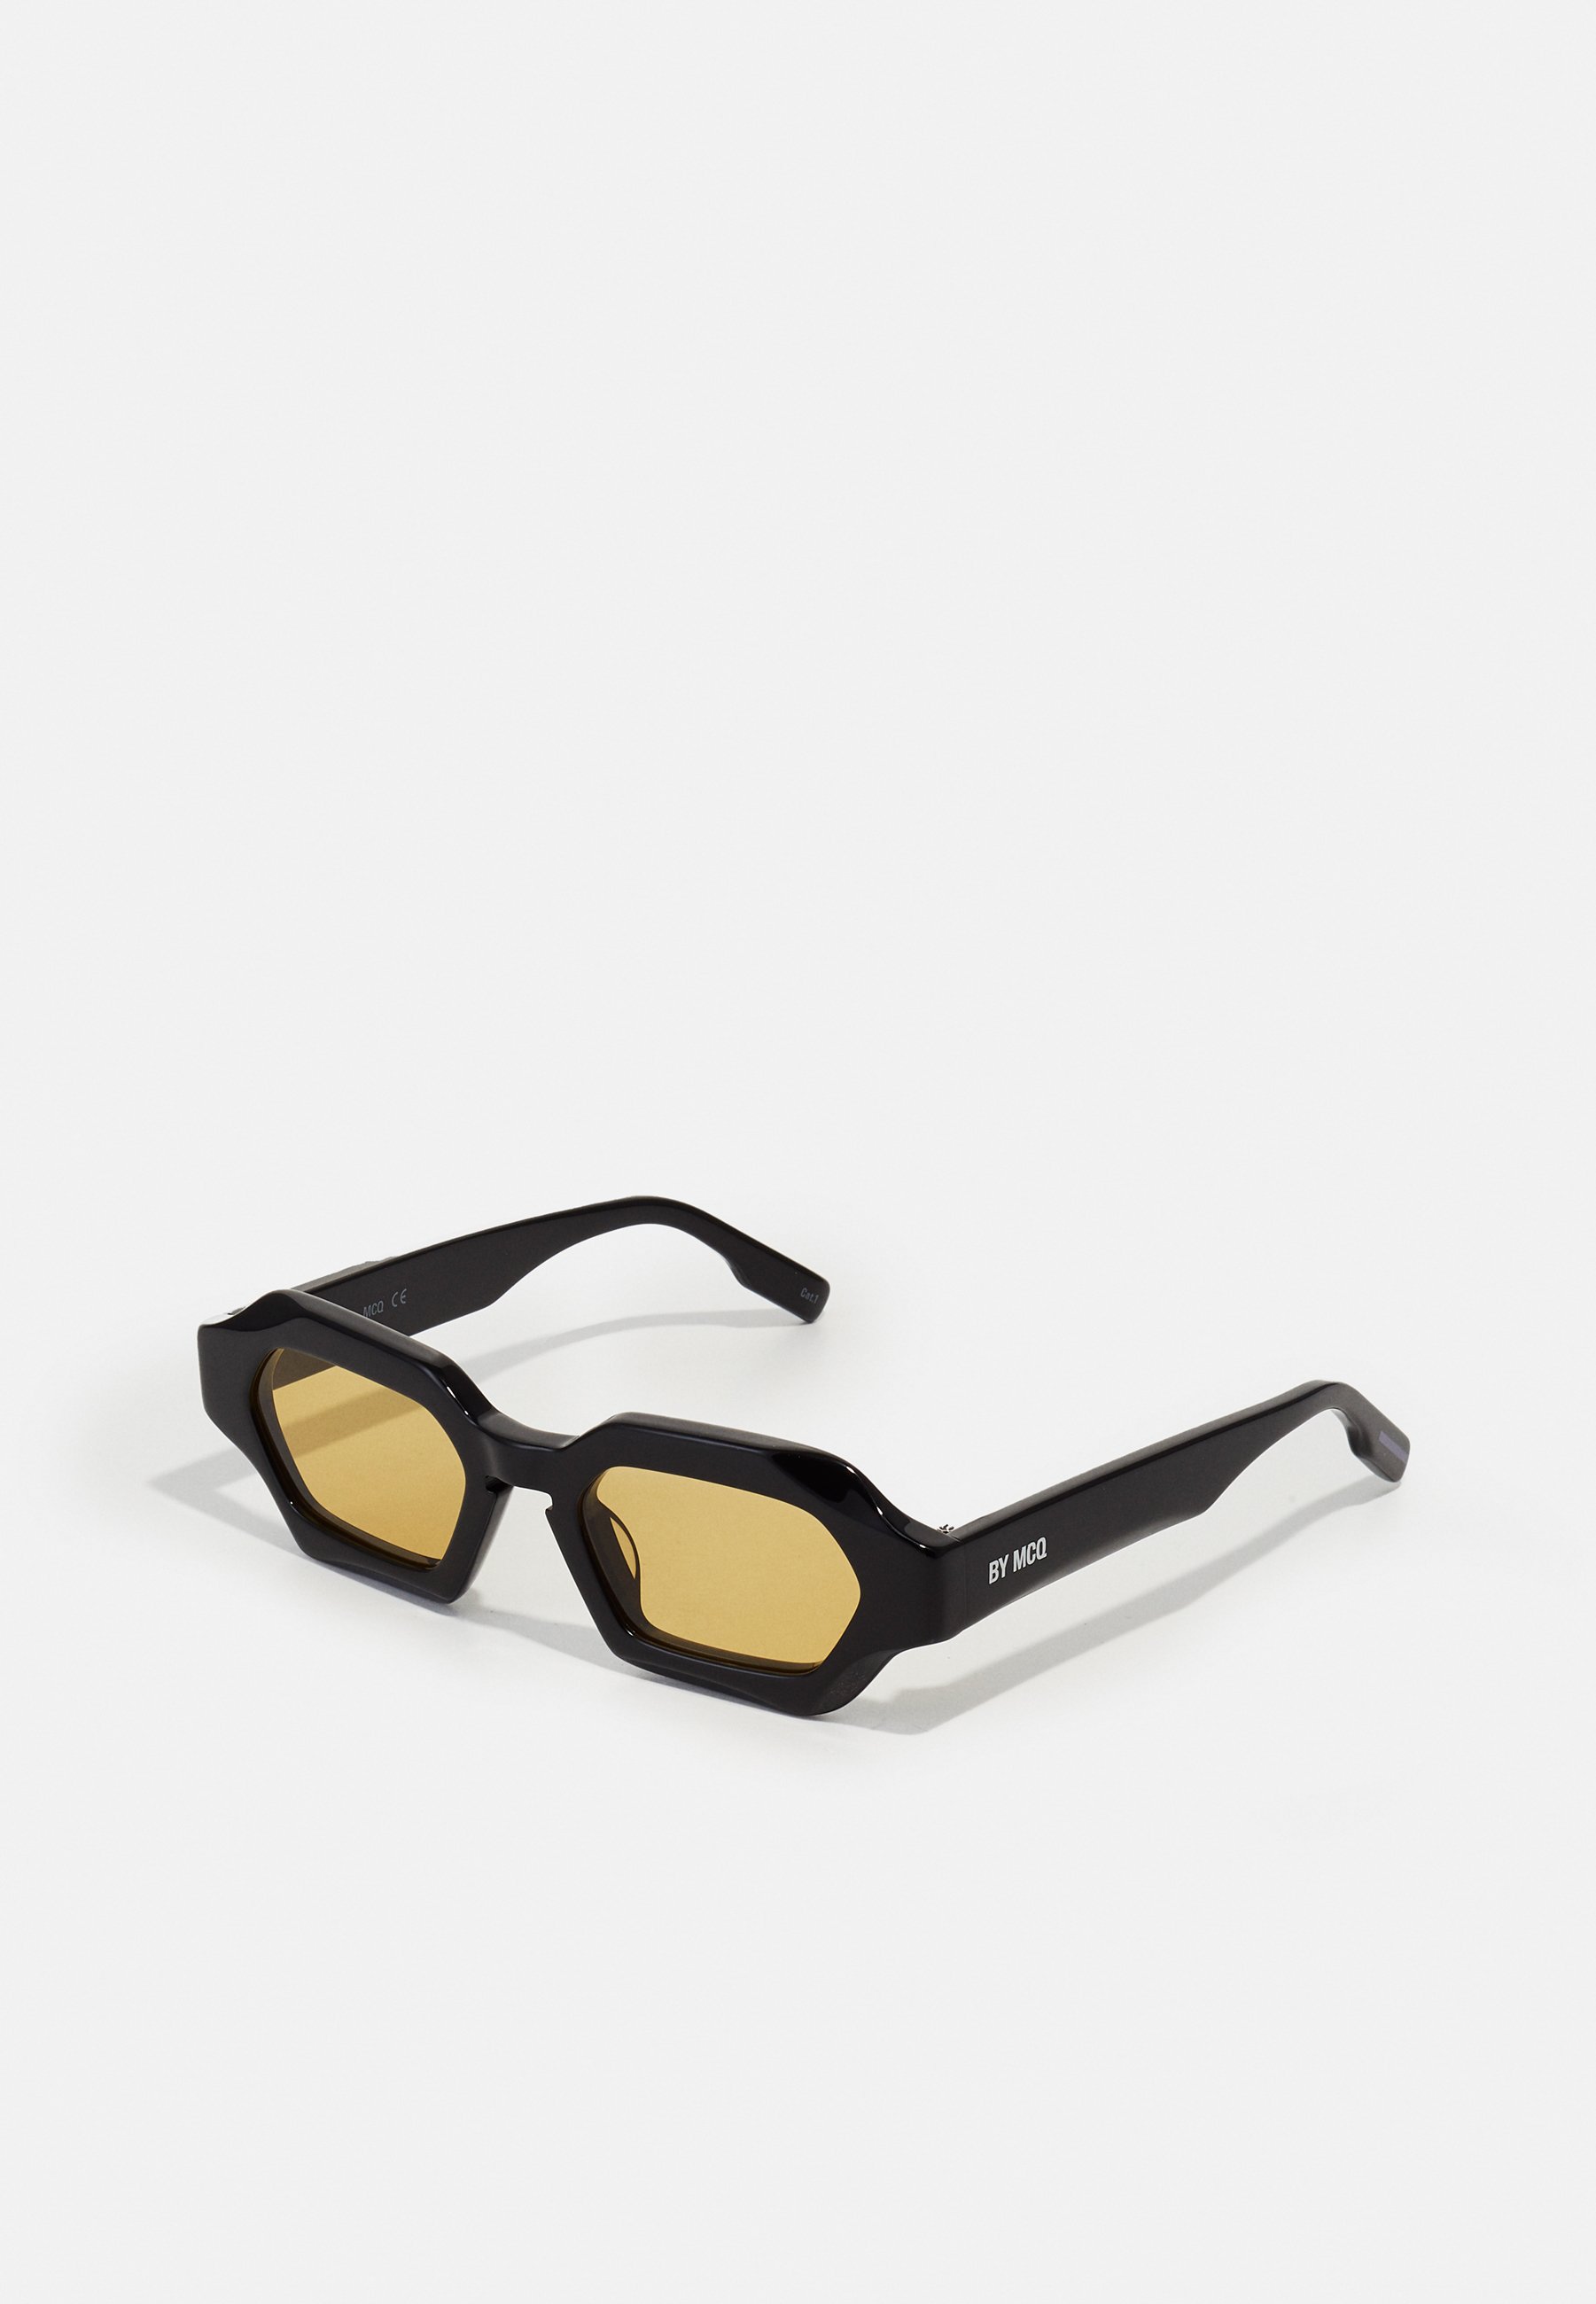 McQ Alexander McQueen UNISEX - Sonnenbrille - black/yellow/schwarz